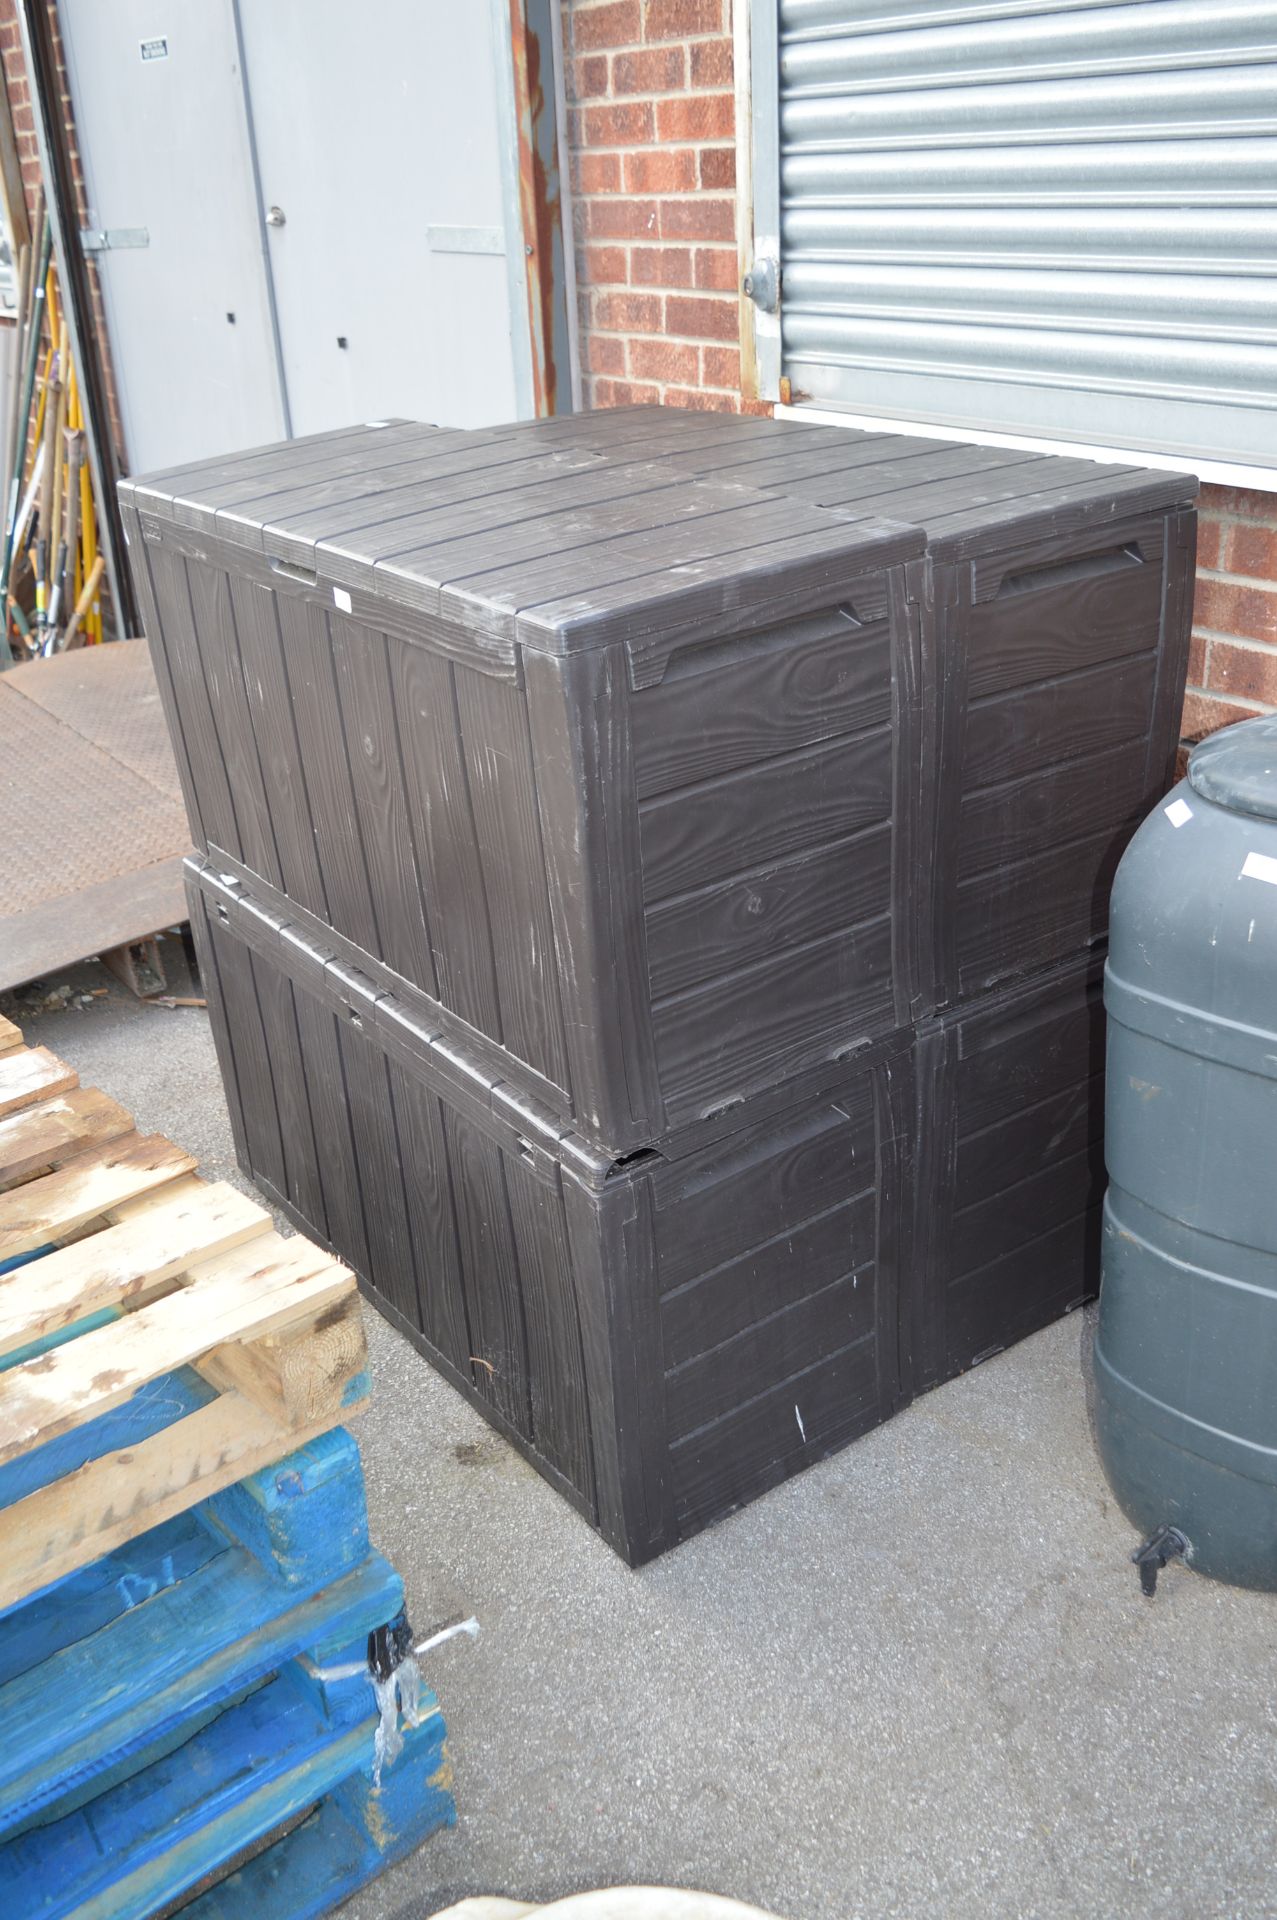 Four Keter Garden Storage Boxes